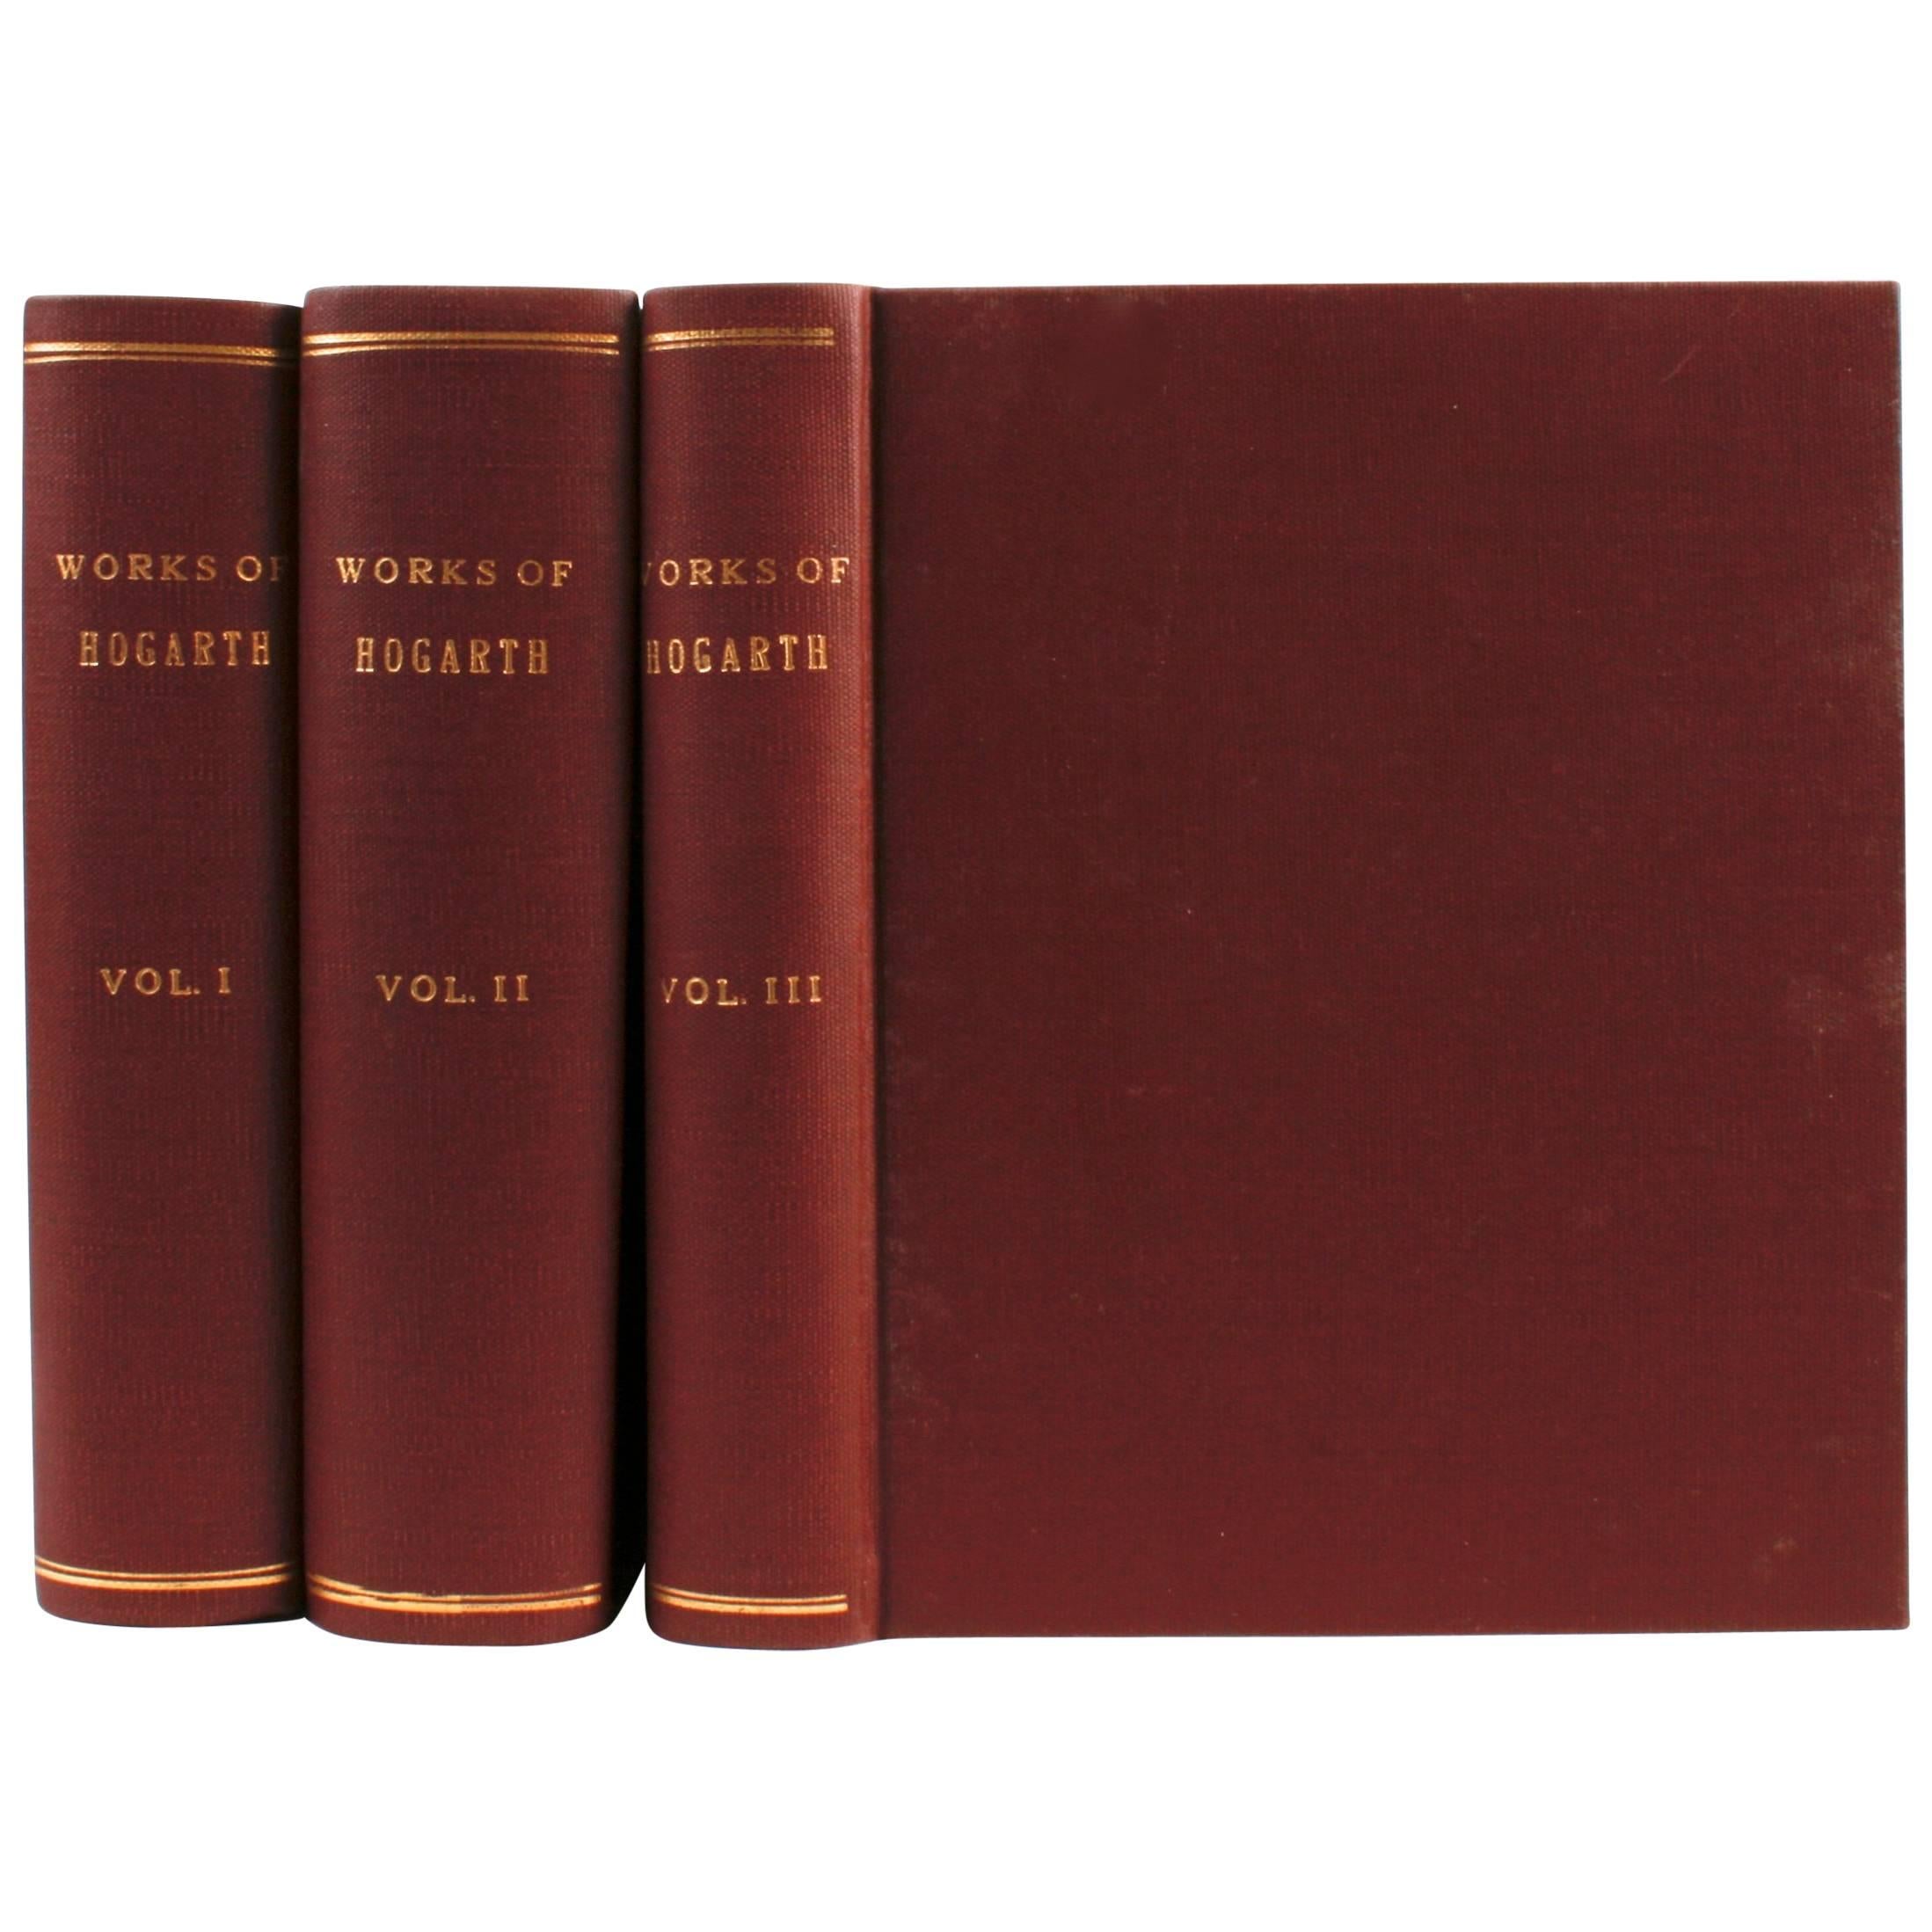 Echte Werke von William Hogarth in drei Bänden